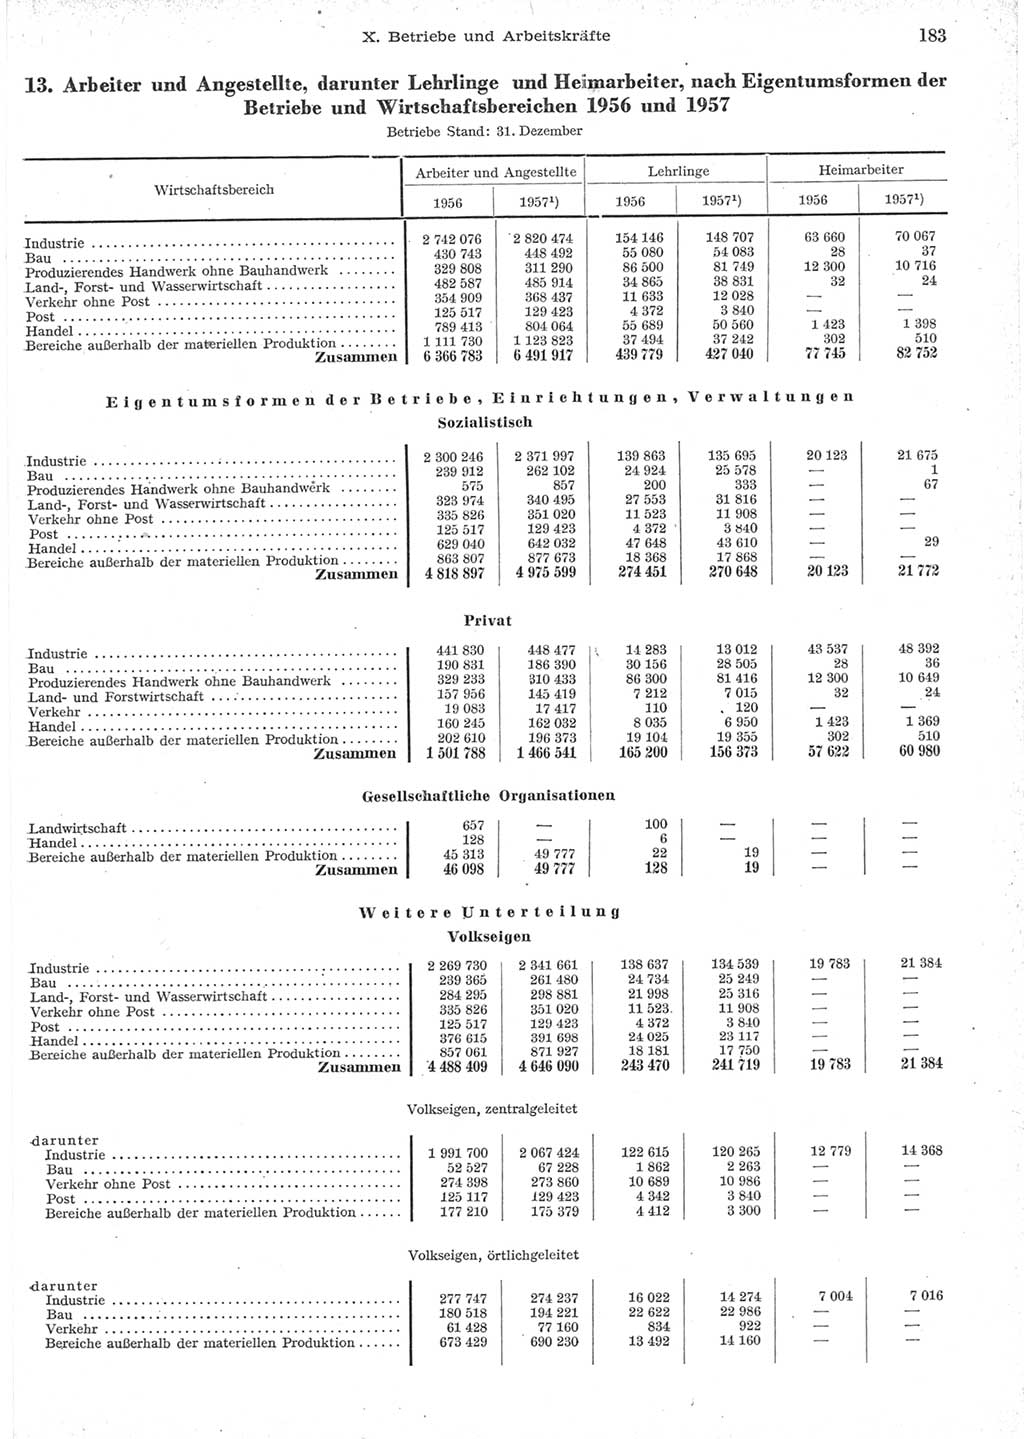 Statistisches Jahrbuch der Deutschen Demokratischen Republik (DDR) 1957, Seite 183 (Stat. Jb. DDR 1957, S. 183)